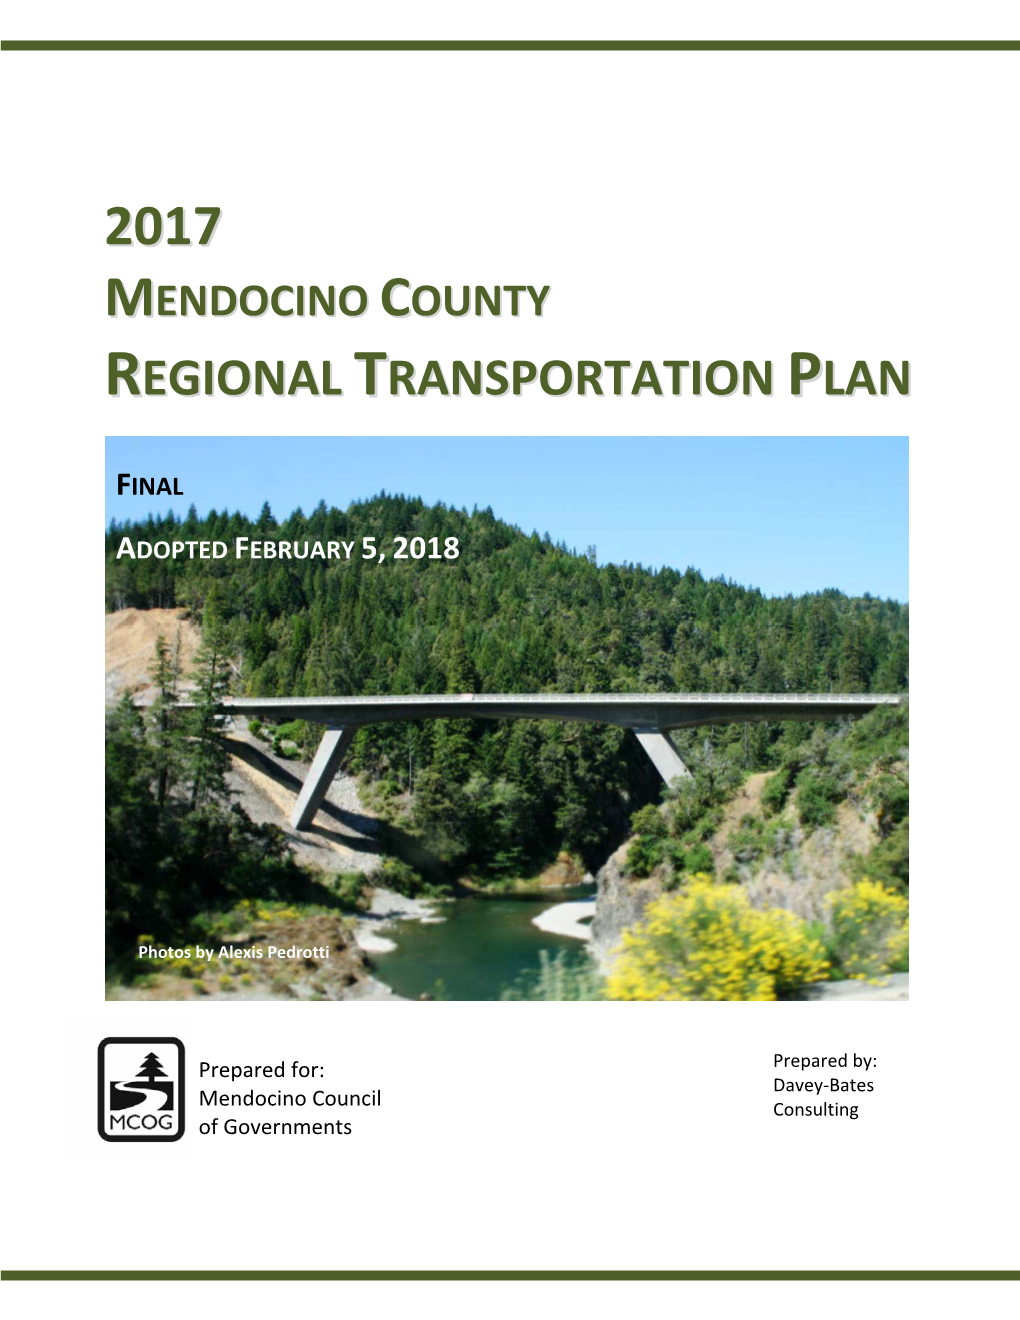 2017 Mendocino County Regional Transportation Plan